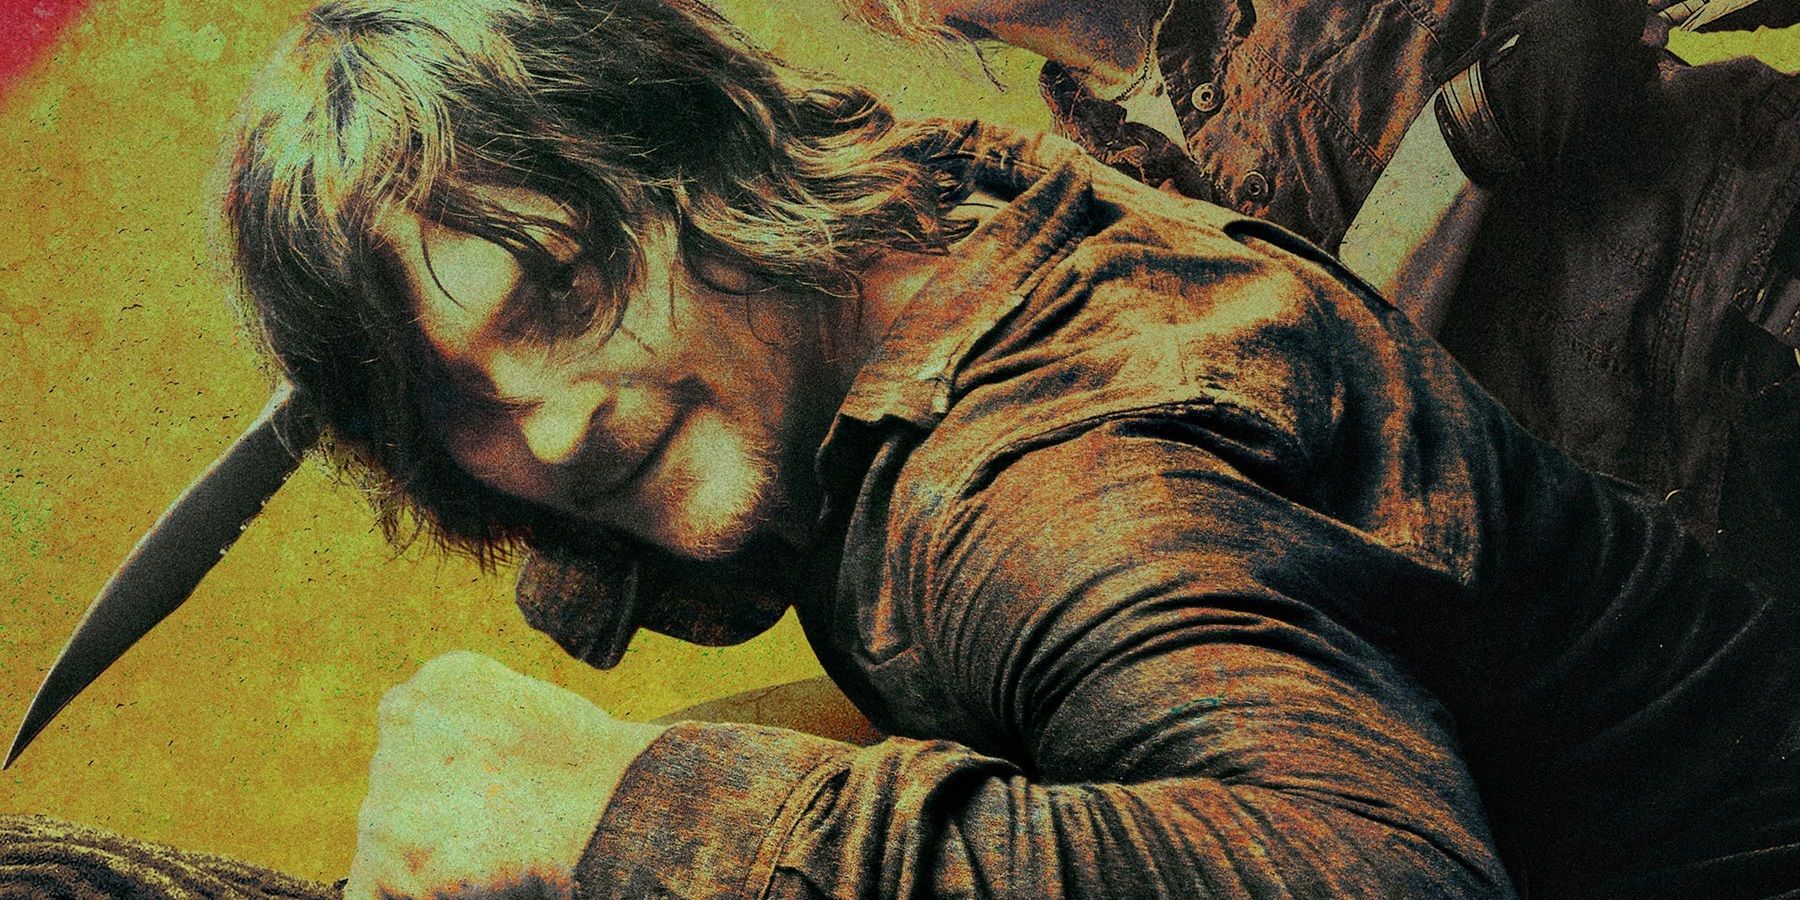 Daryl is ready in The Walking Dead season 10 poster